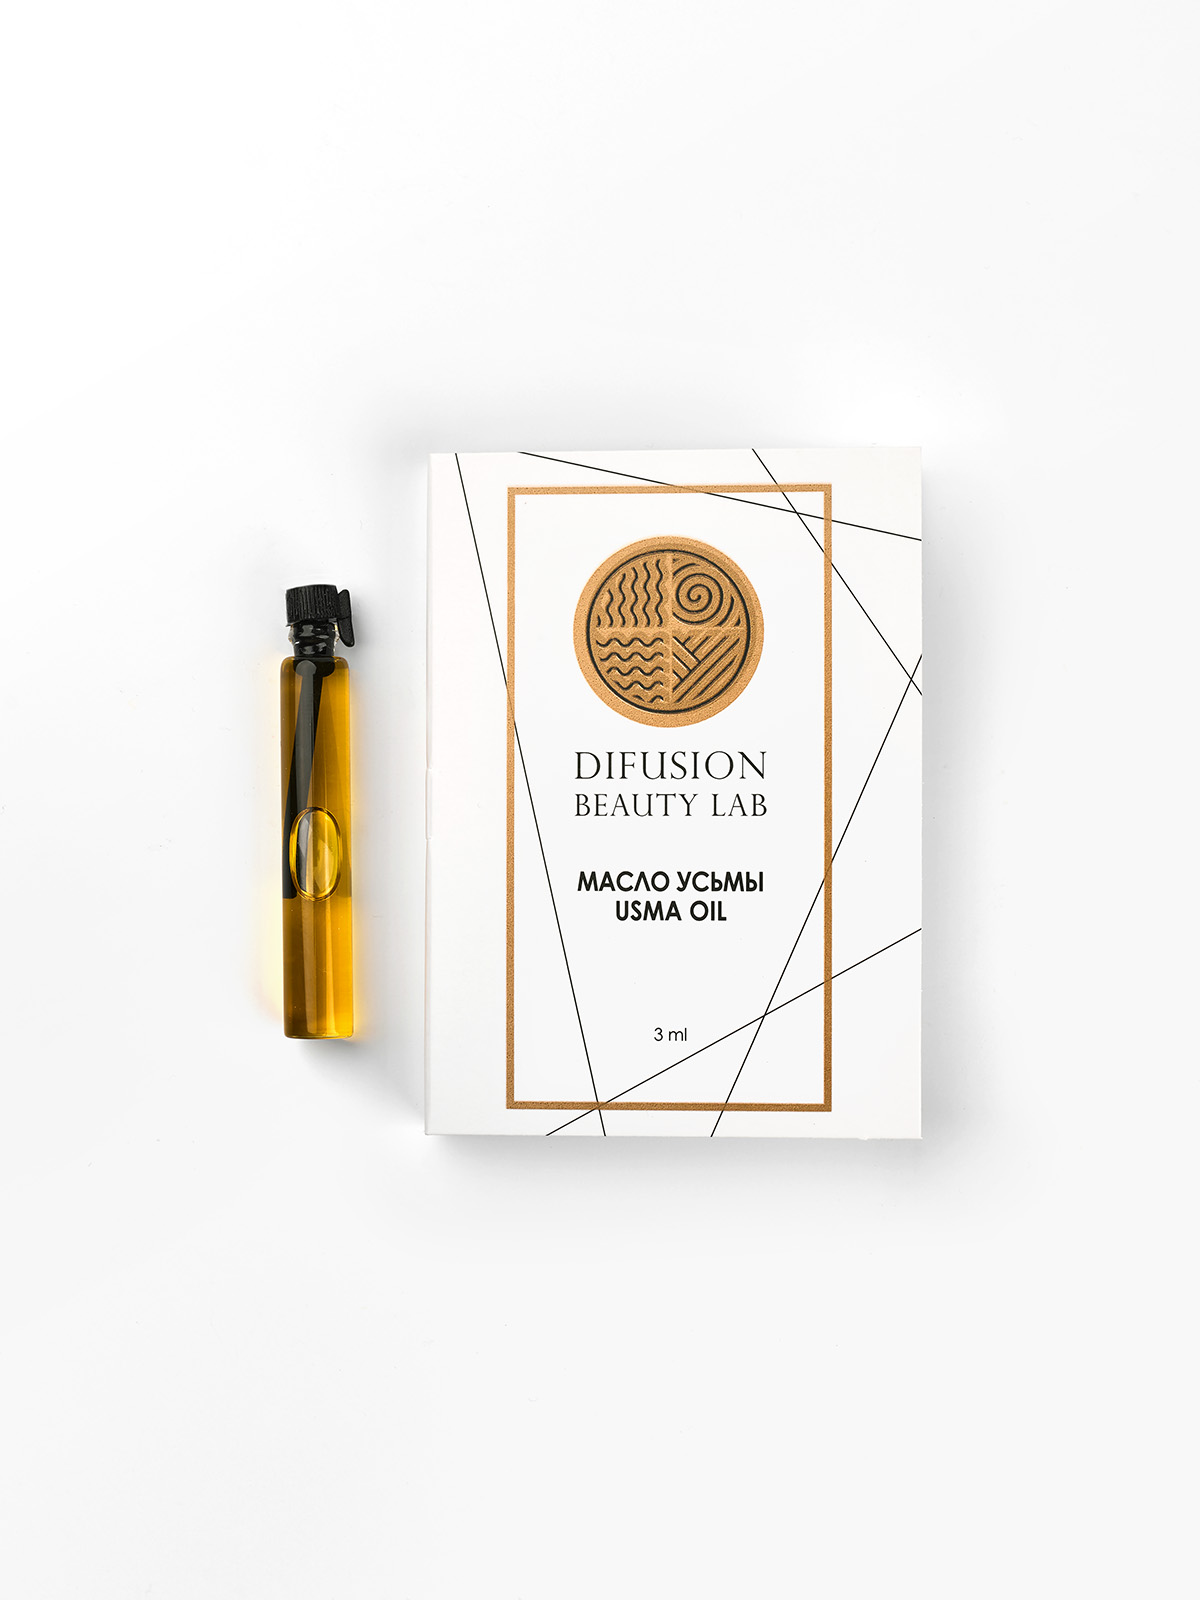 Масло семян усьмы Difusion Beauty Lab для активации роста волос, бровей и ресниц 3 мл бизорюк масло какао нерафинированное 30